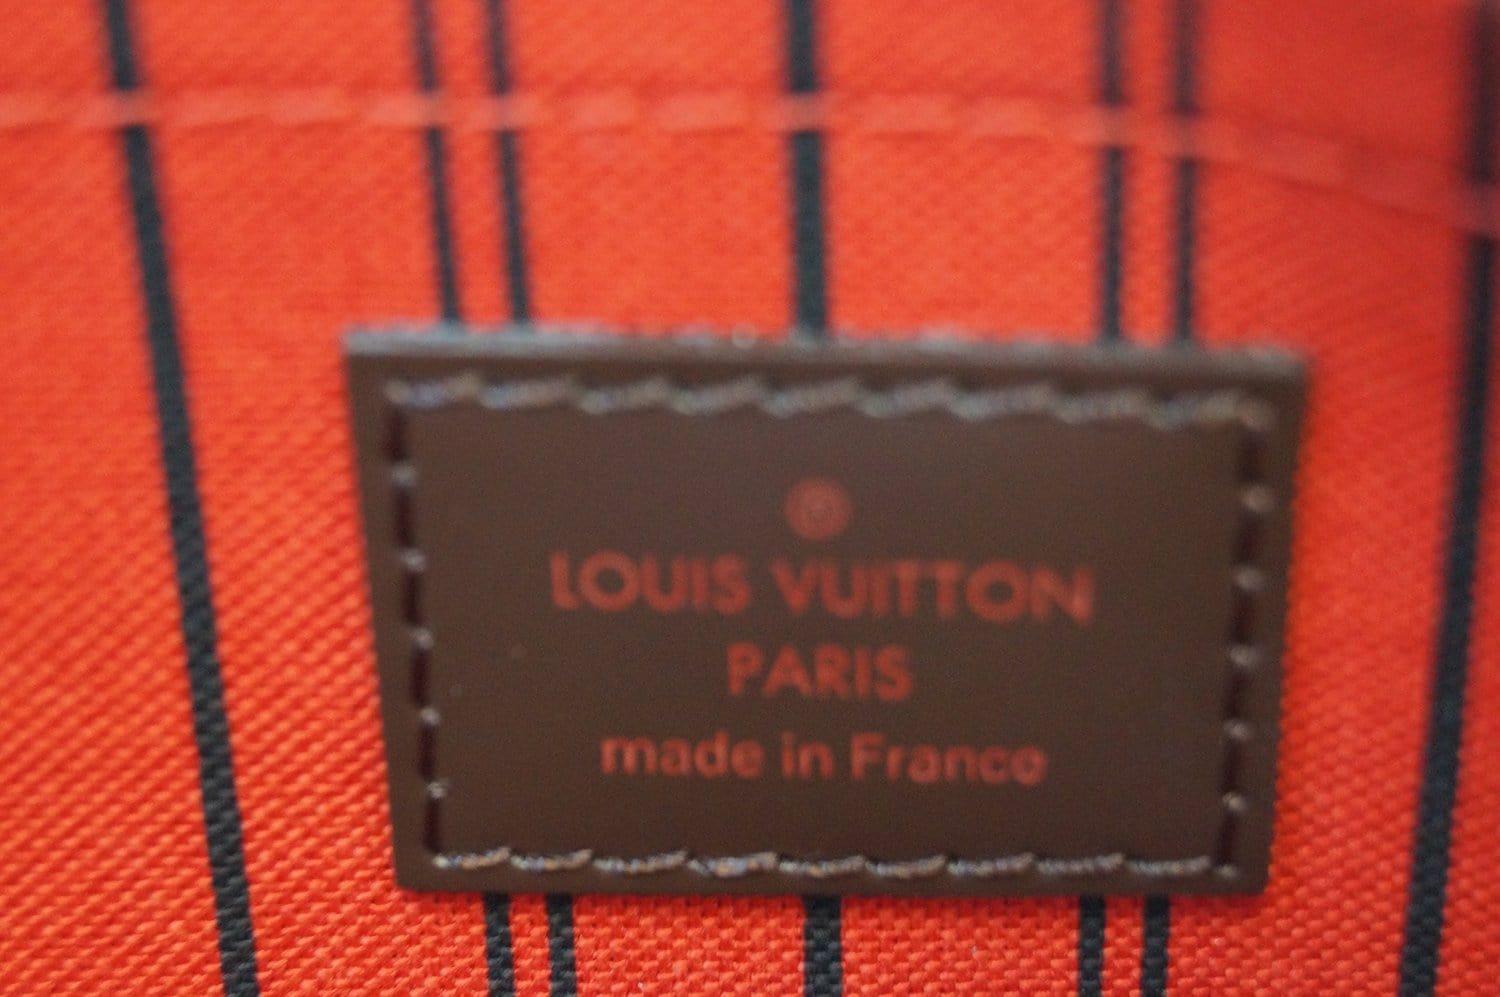 Louis Vuitton Neverfull Wristlet Bag – Rent a Dress